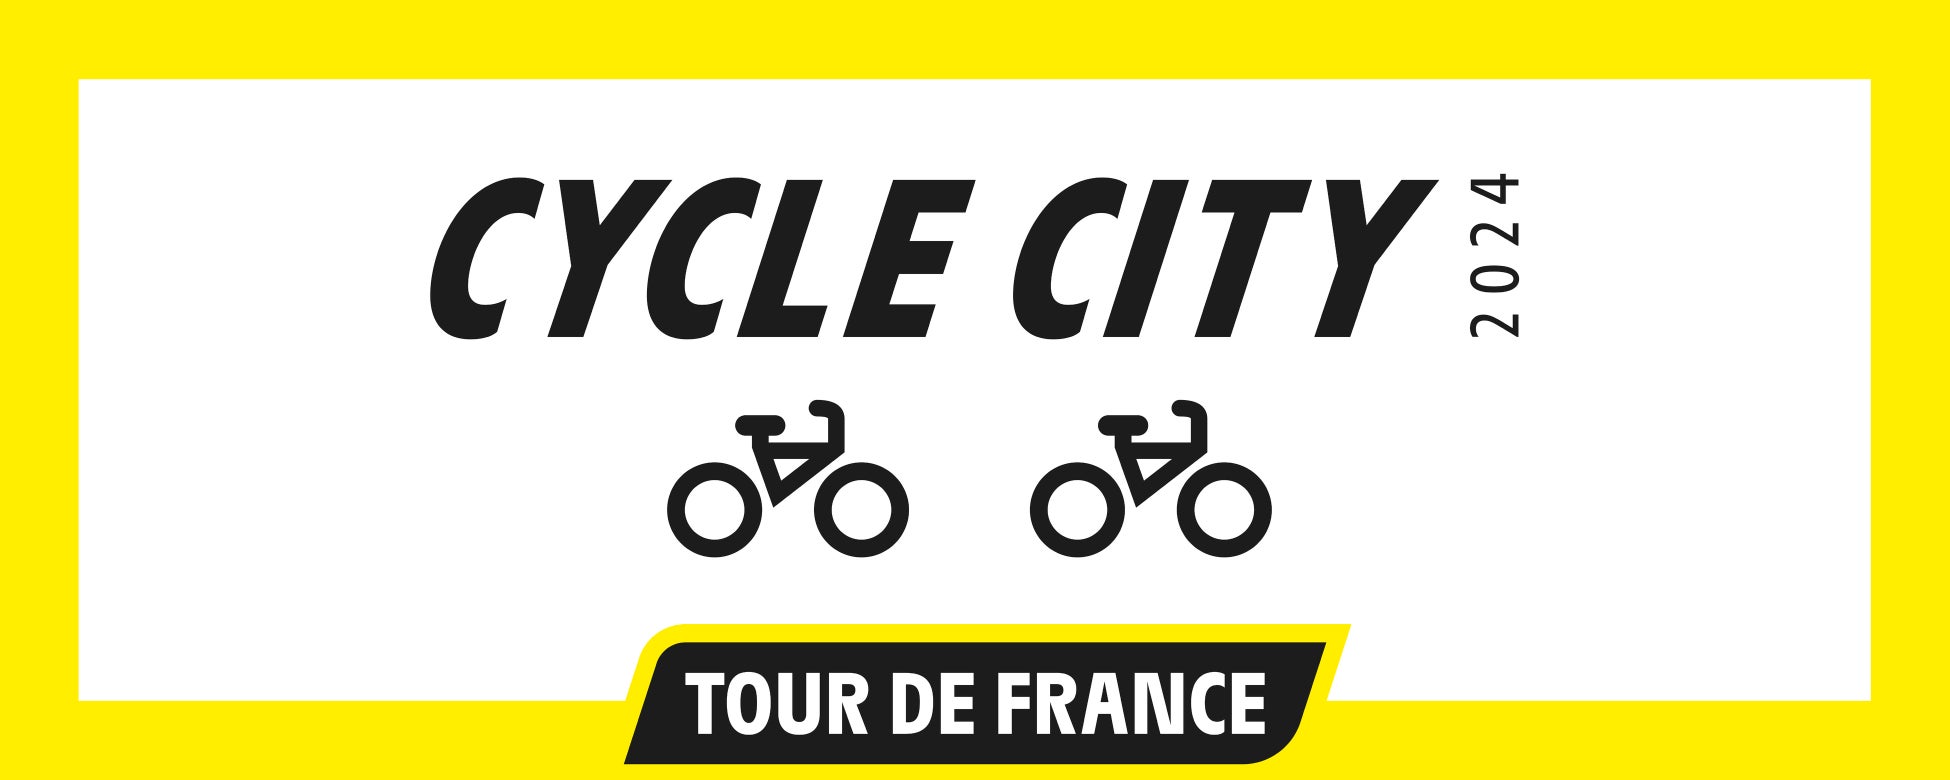 さいたま市が『ツール・ド・フランス サイクルシティ』ラベルを授与 アジアの都市では初の認定